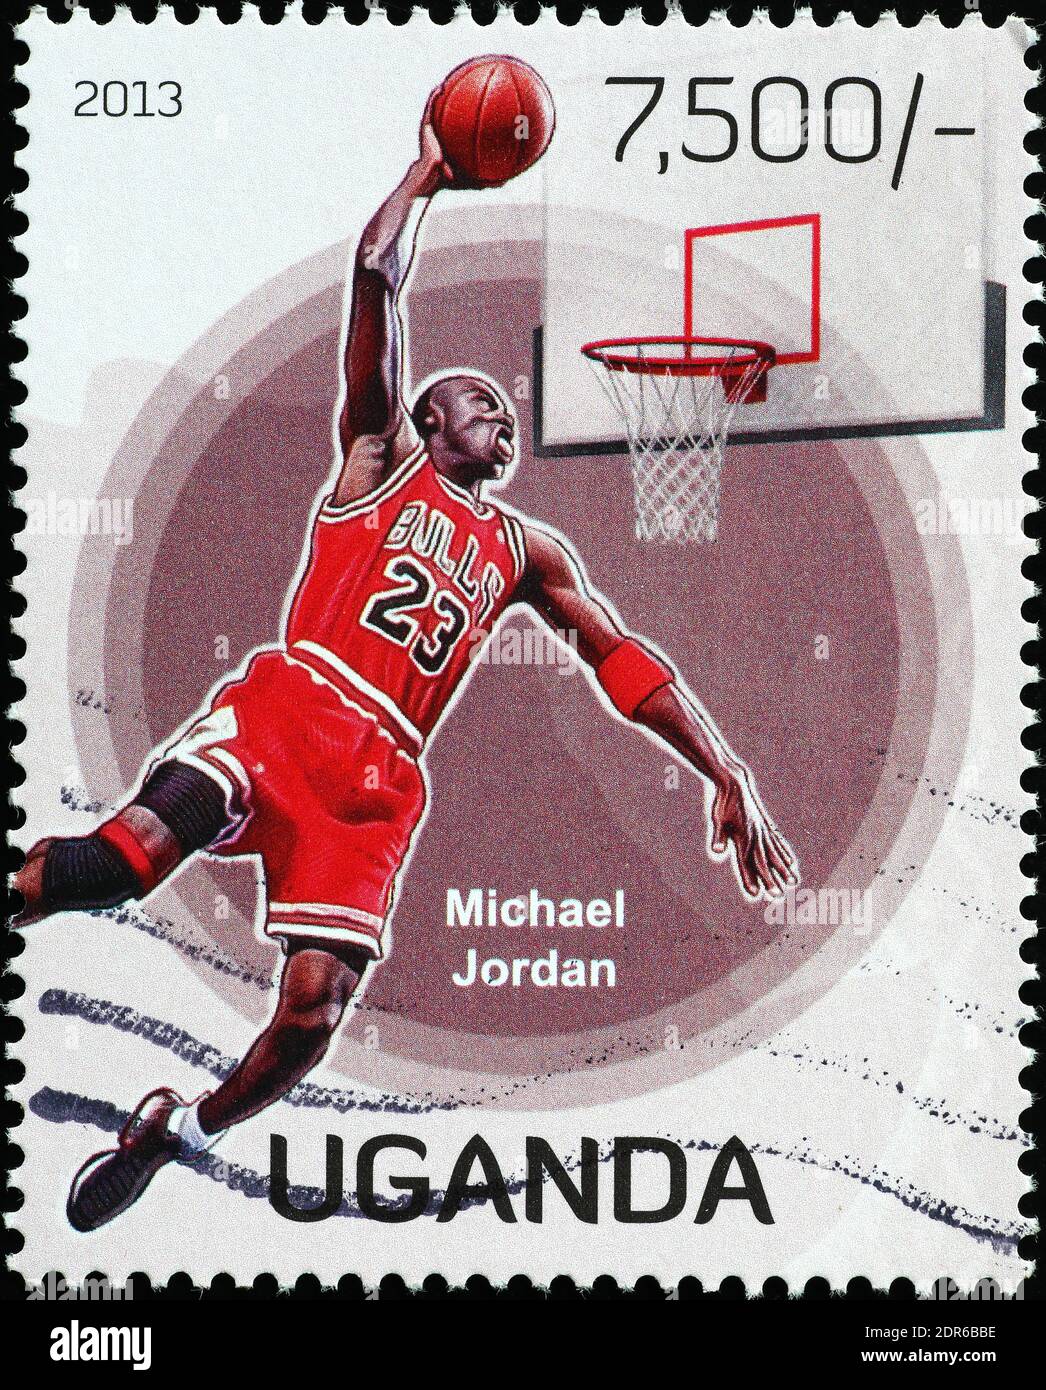 Michael Jordan sur timbre-poste de l'Ouganda Banque D'Images